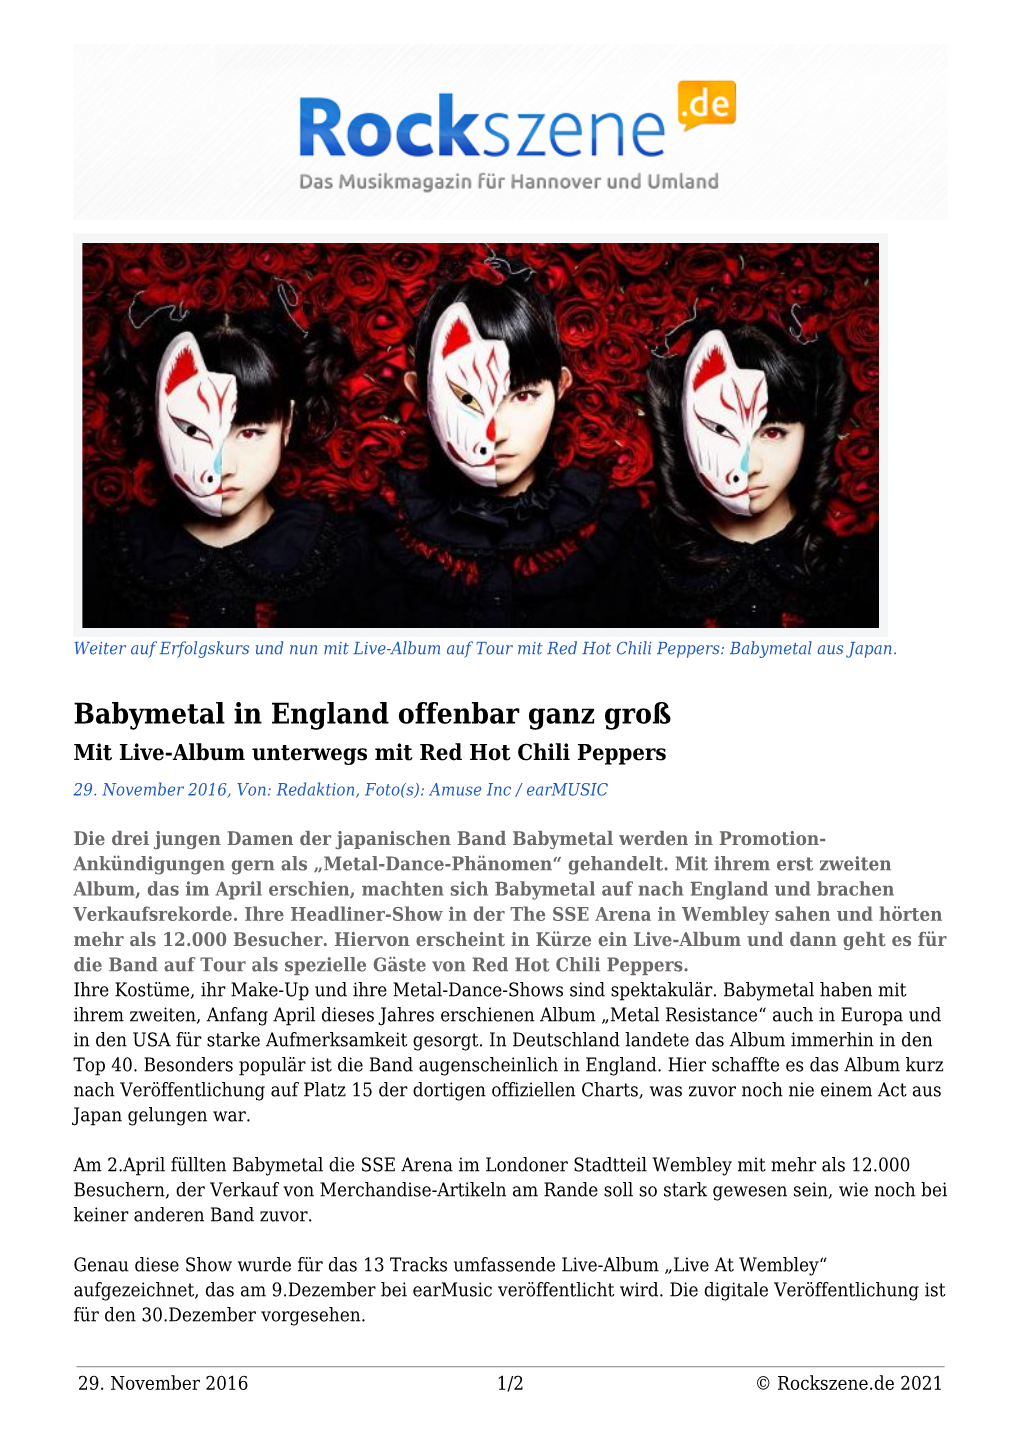 Babymetal in England Offenbar Ganz Groß Mit Live-Album Unterwegs Mit Red Hot Chili Peppers